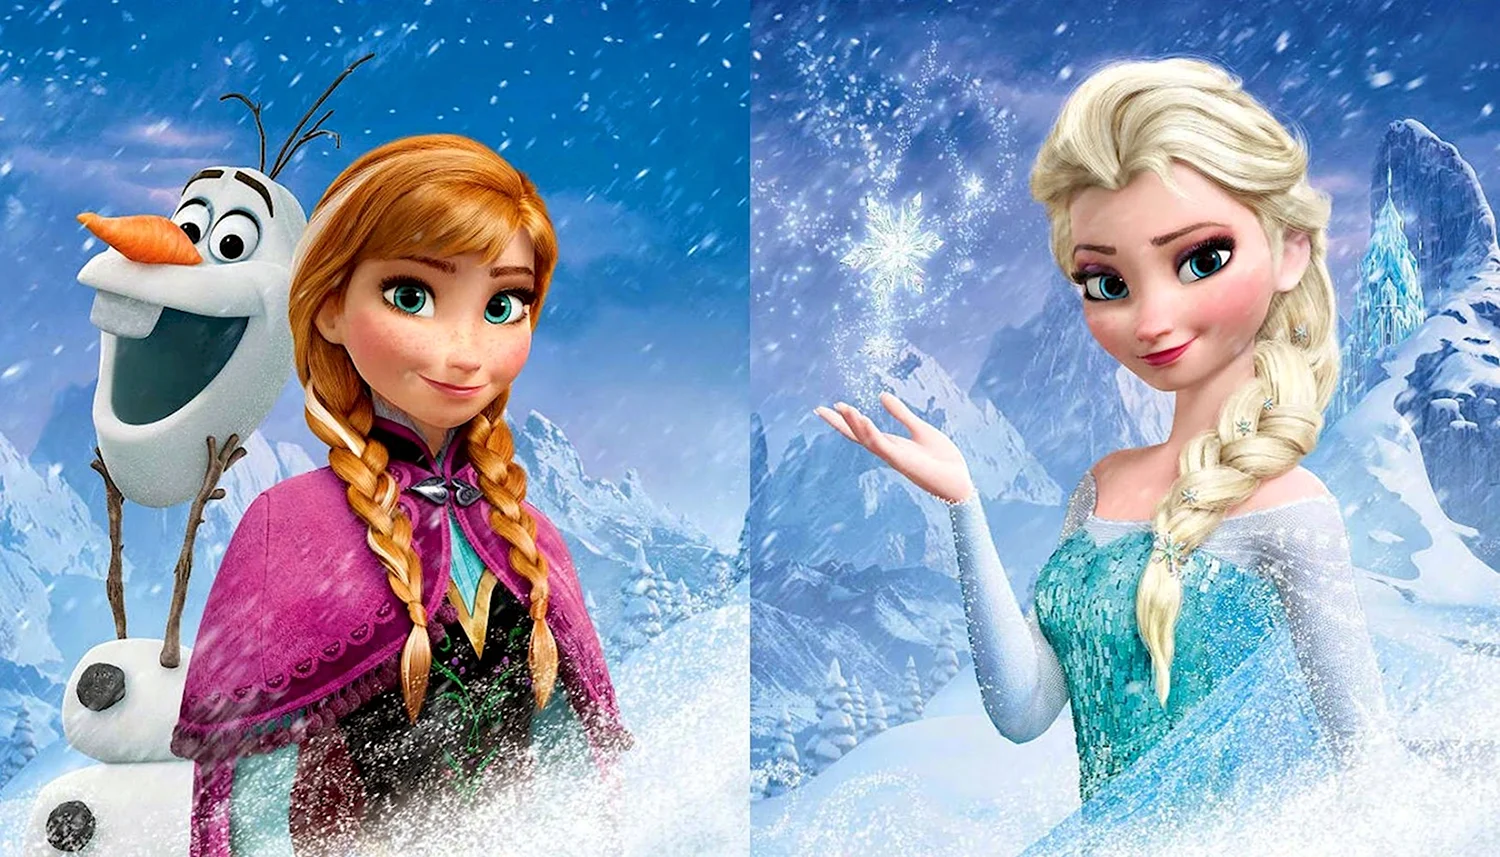 Snowman Elsa and Anna